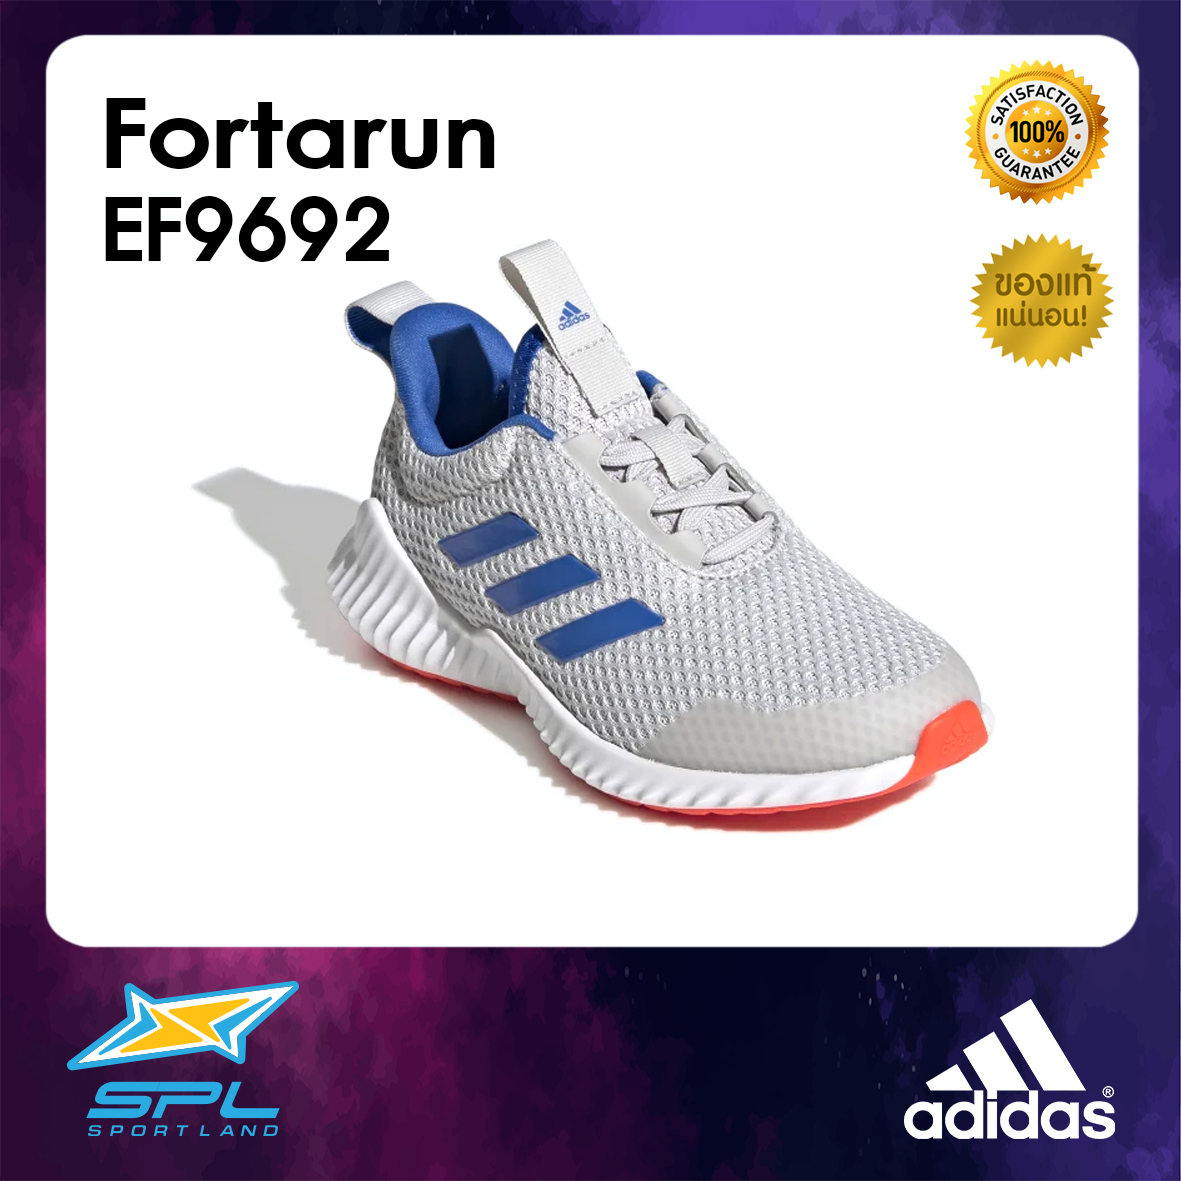 Adidas รองเท้าวิ่งเด็ก รองเท้าแฟชั่น รองเท้ากีฬา รองเท้าผ้าใบ รองเท้าเด็ก อาดิดาส Running Kids Shoe Fortarun Ef9692 (1600). 